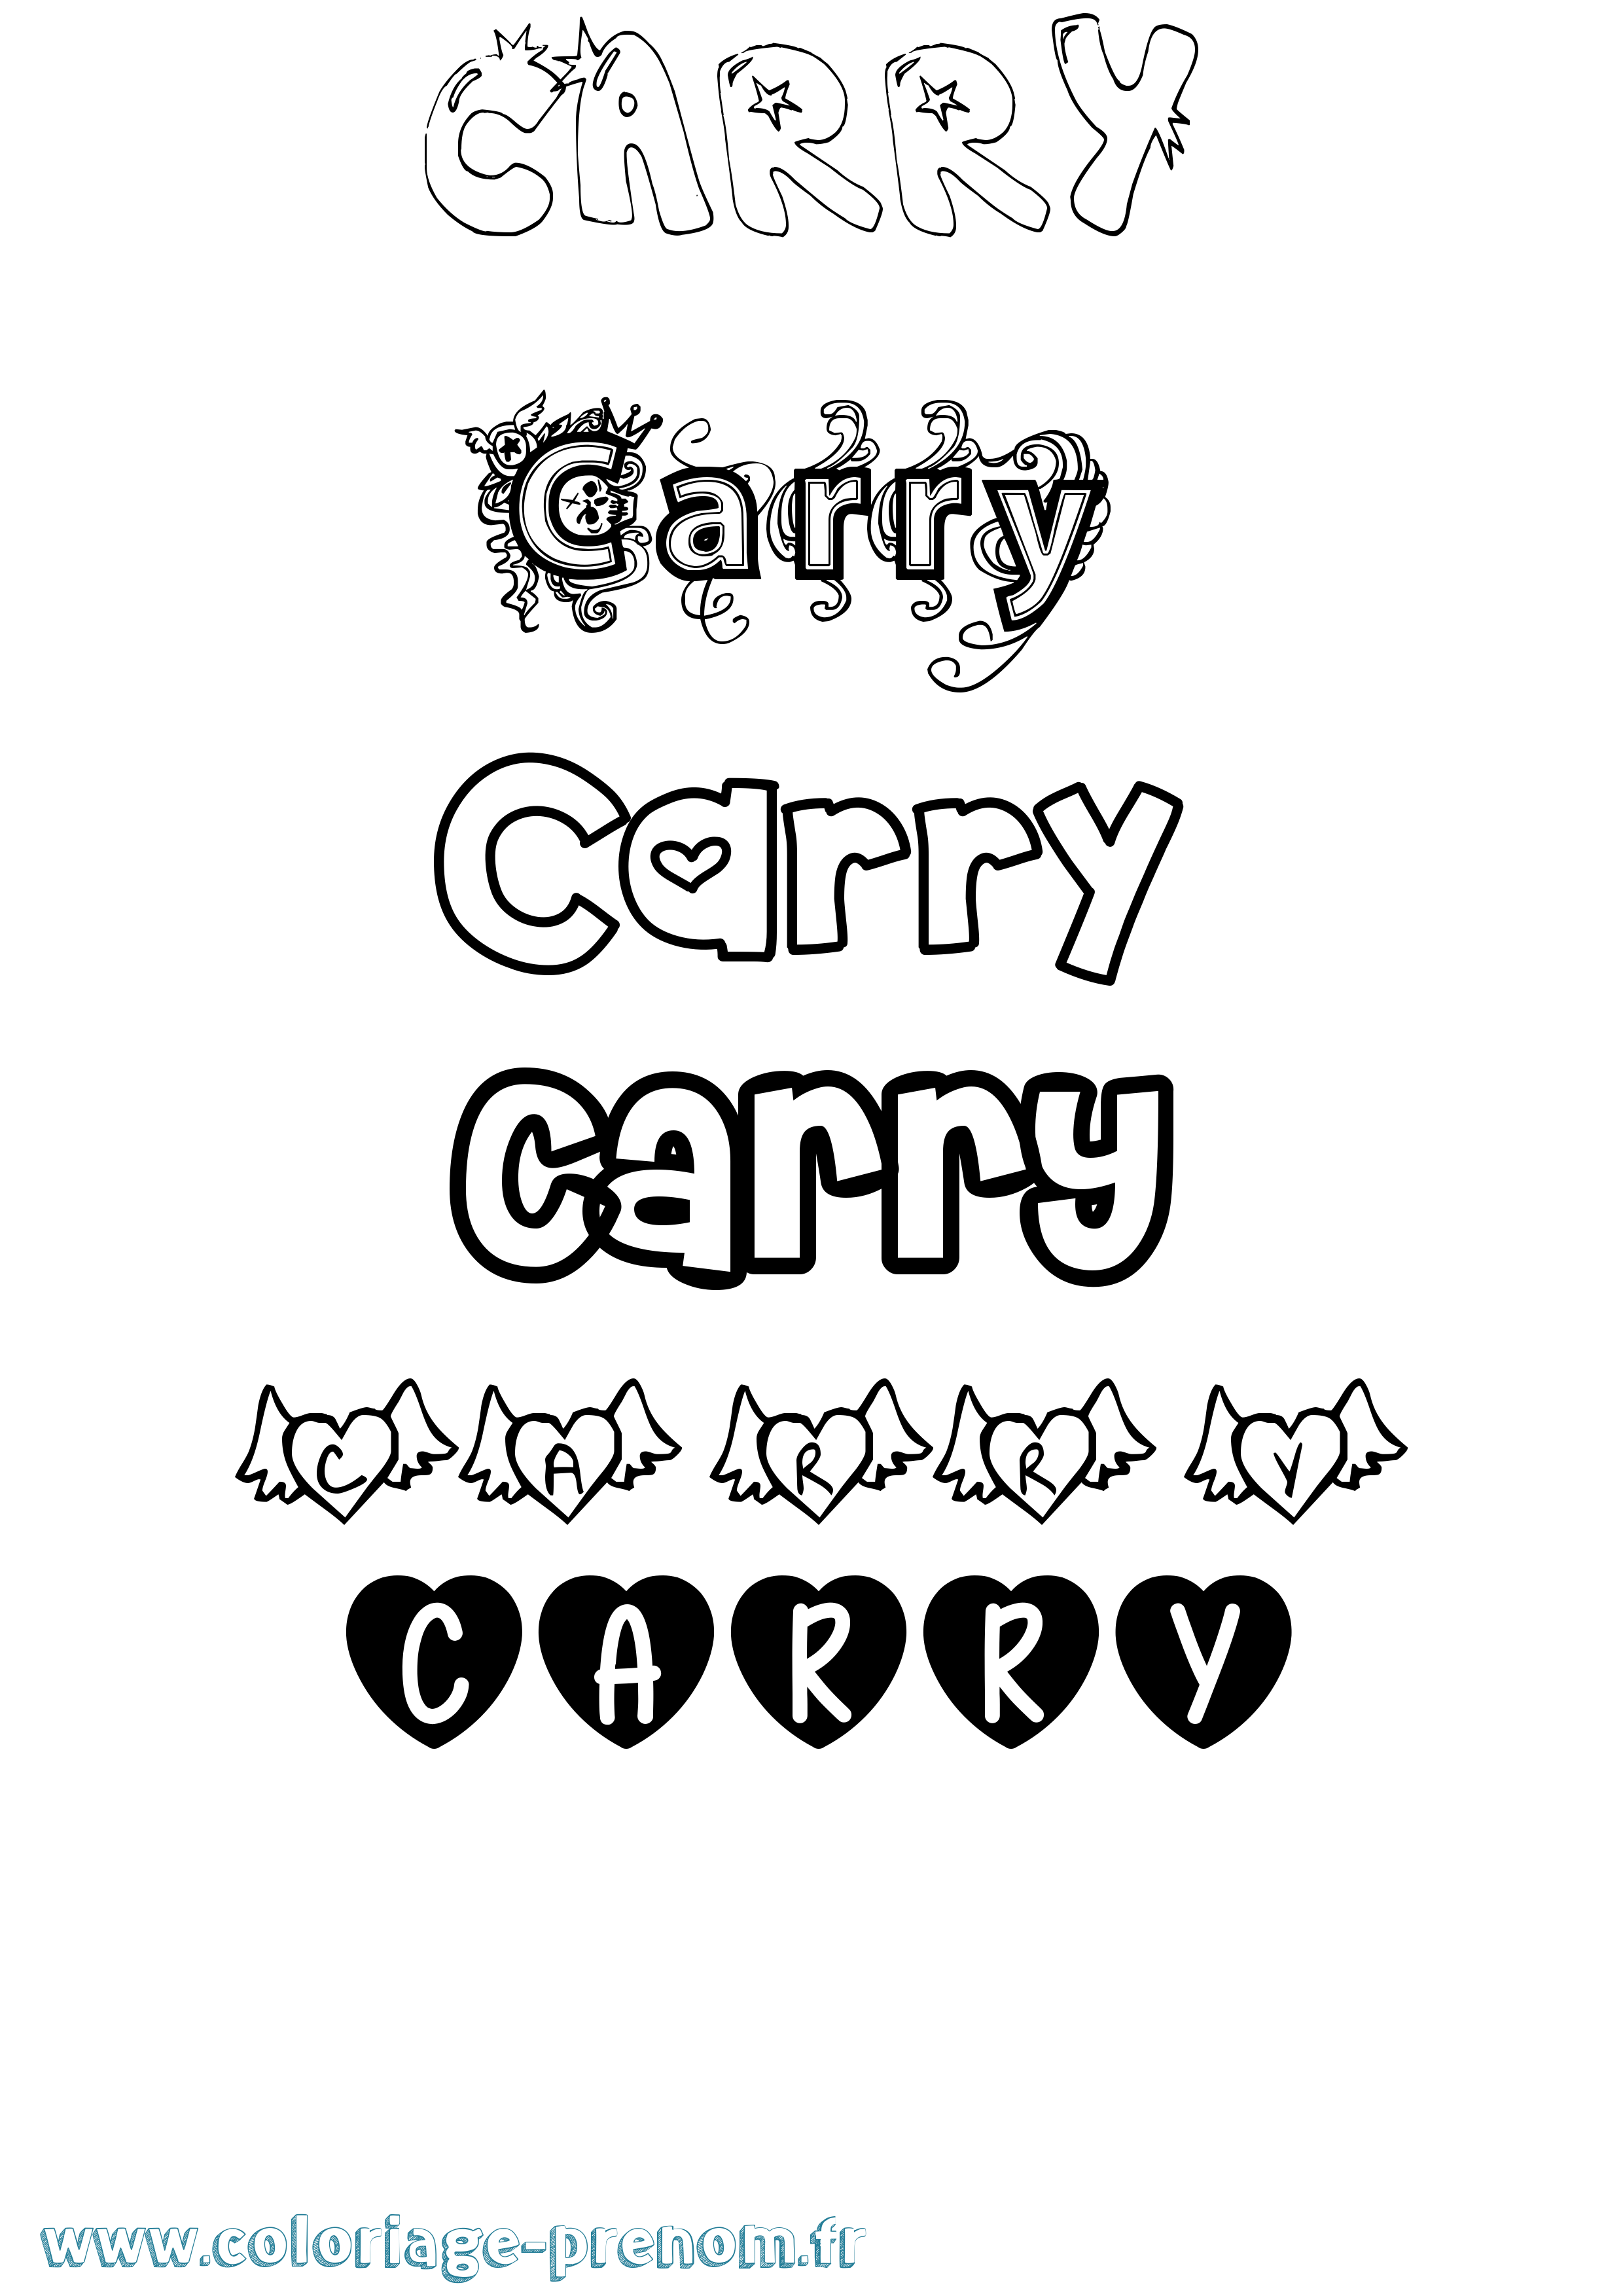 Coloriage prénom Carry Girly